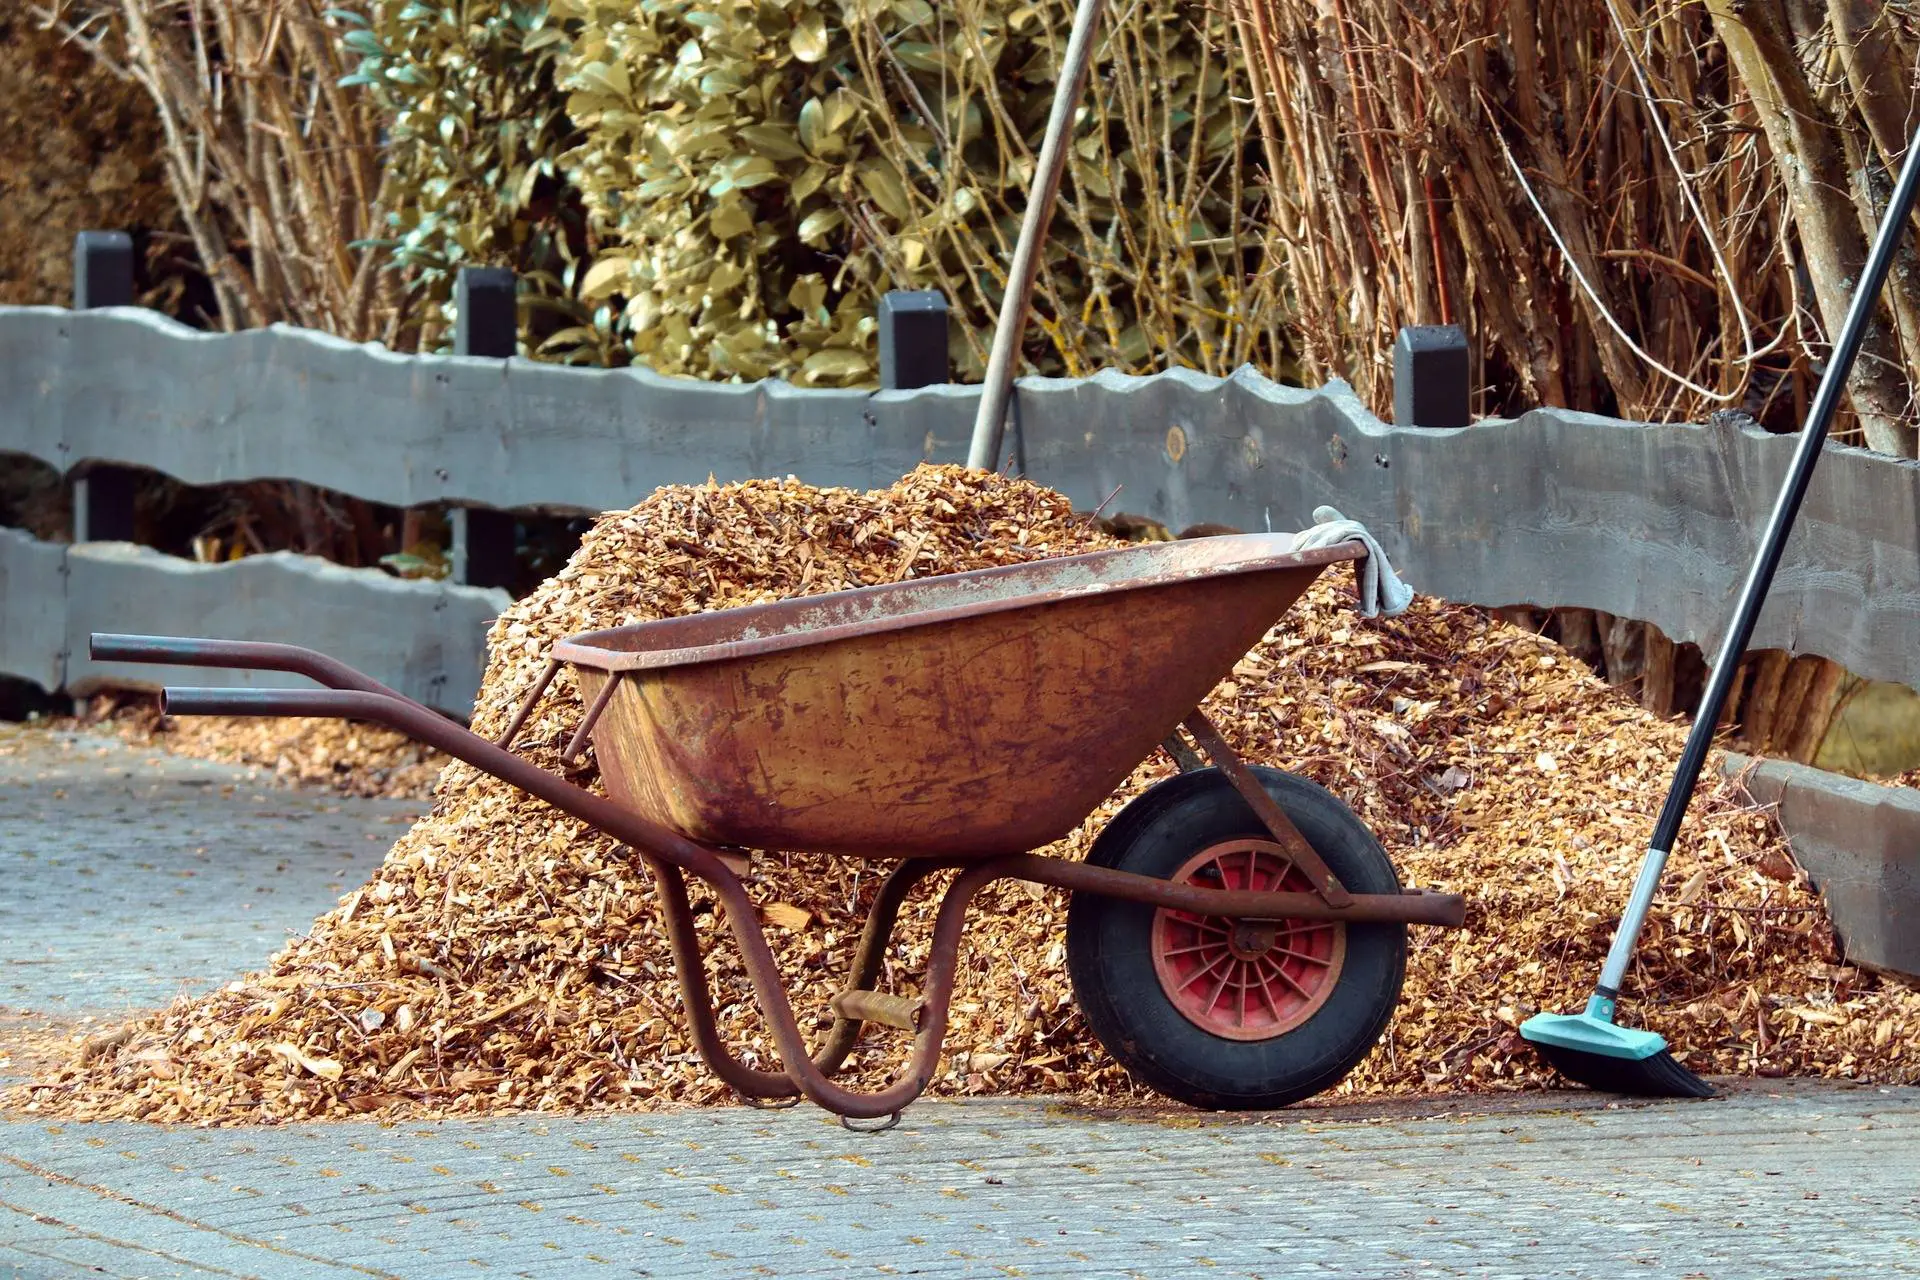 Eine Schubkarre steht vor einem großen Haufen Mulch